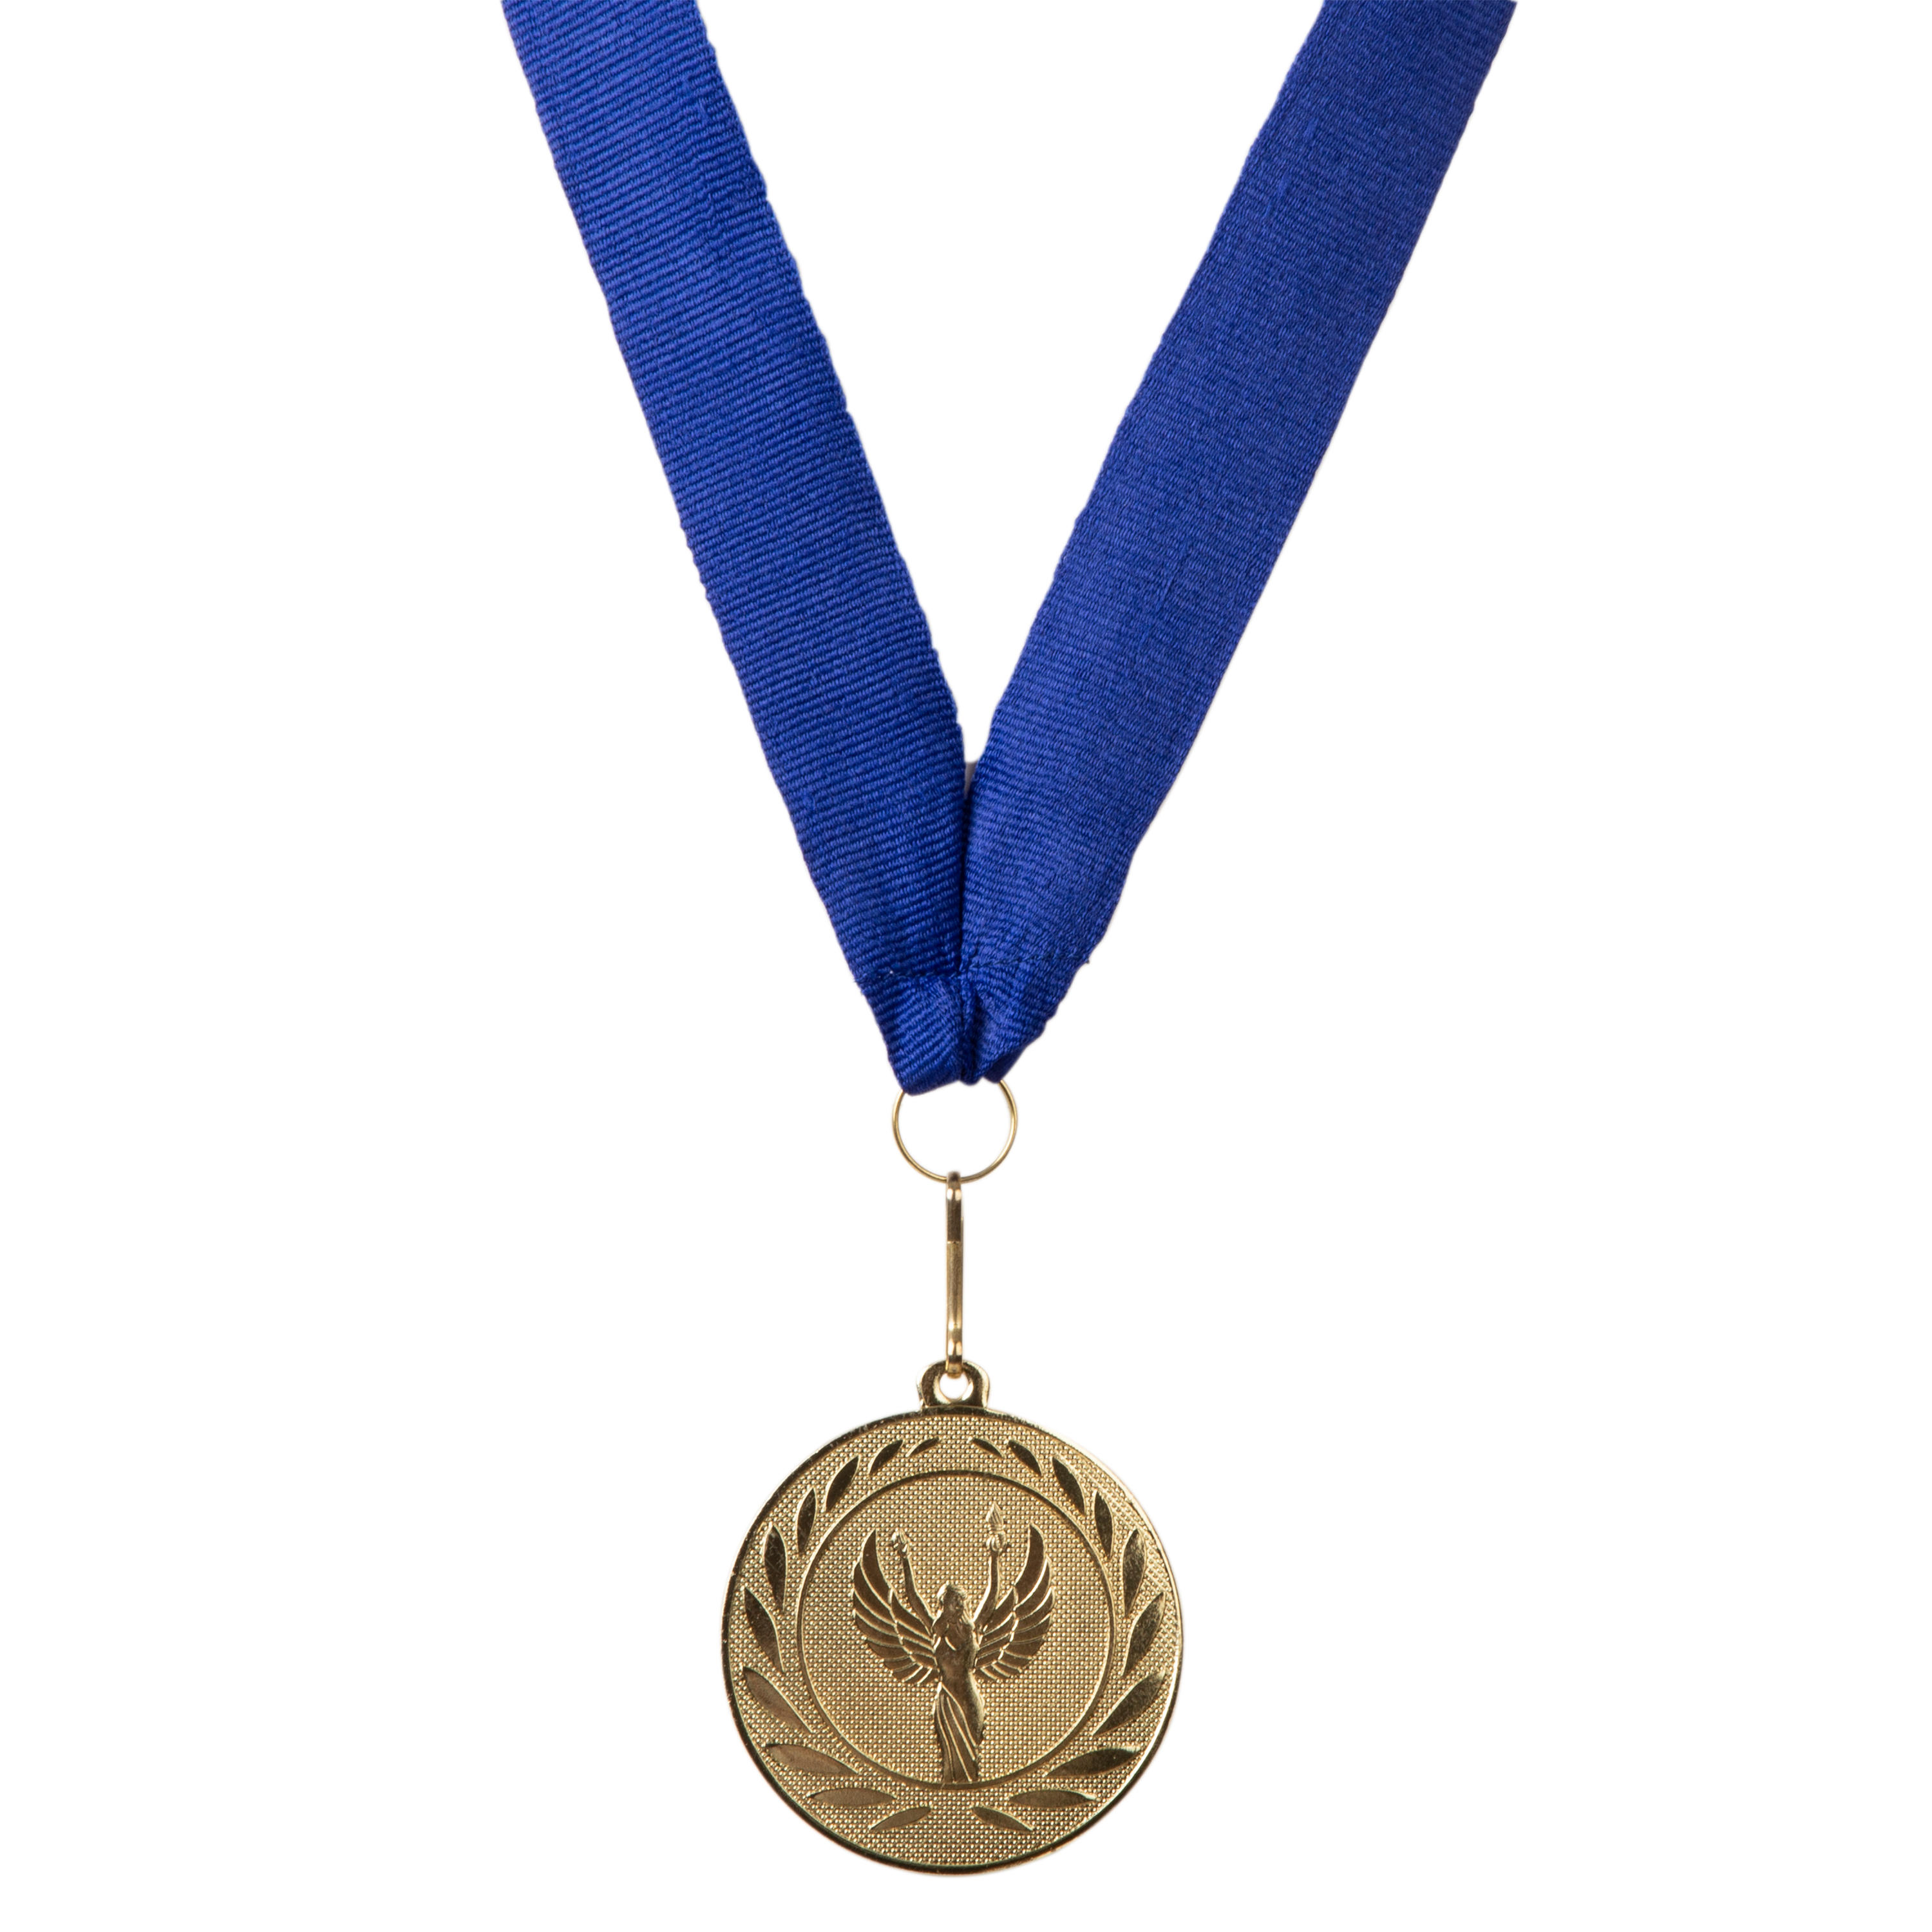 Medalie Victorie 50 mm + Panglică decathlon.ro  Accesorii si imbracaminte termica adulti